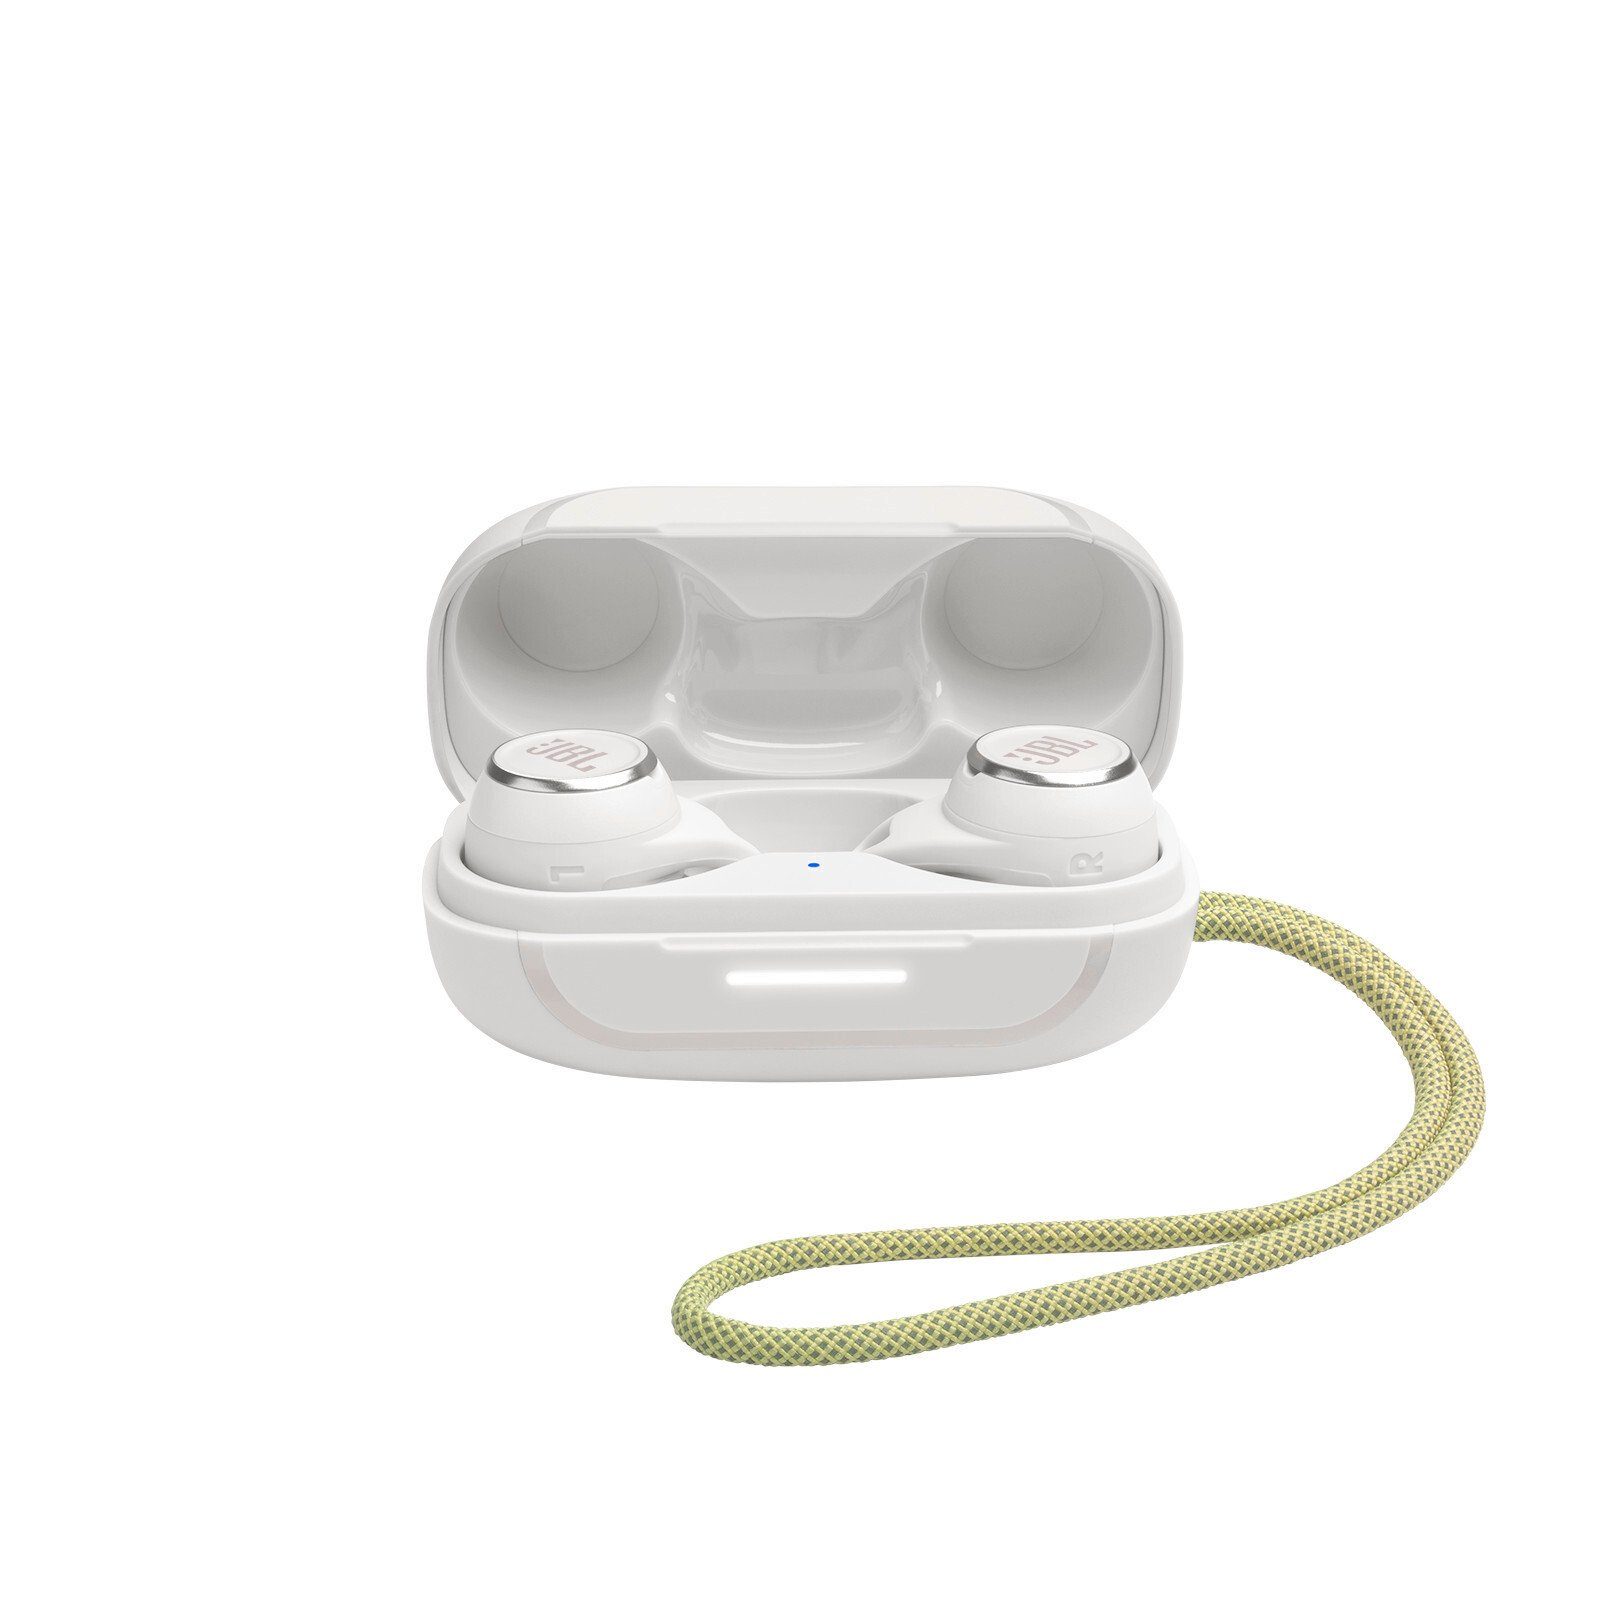 JBL Weiß Reflect wireless Aero In-Ear-Kopfhörer